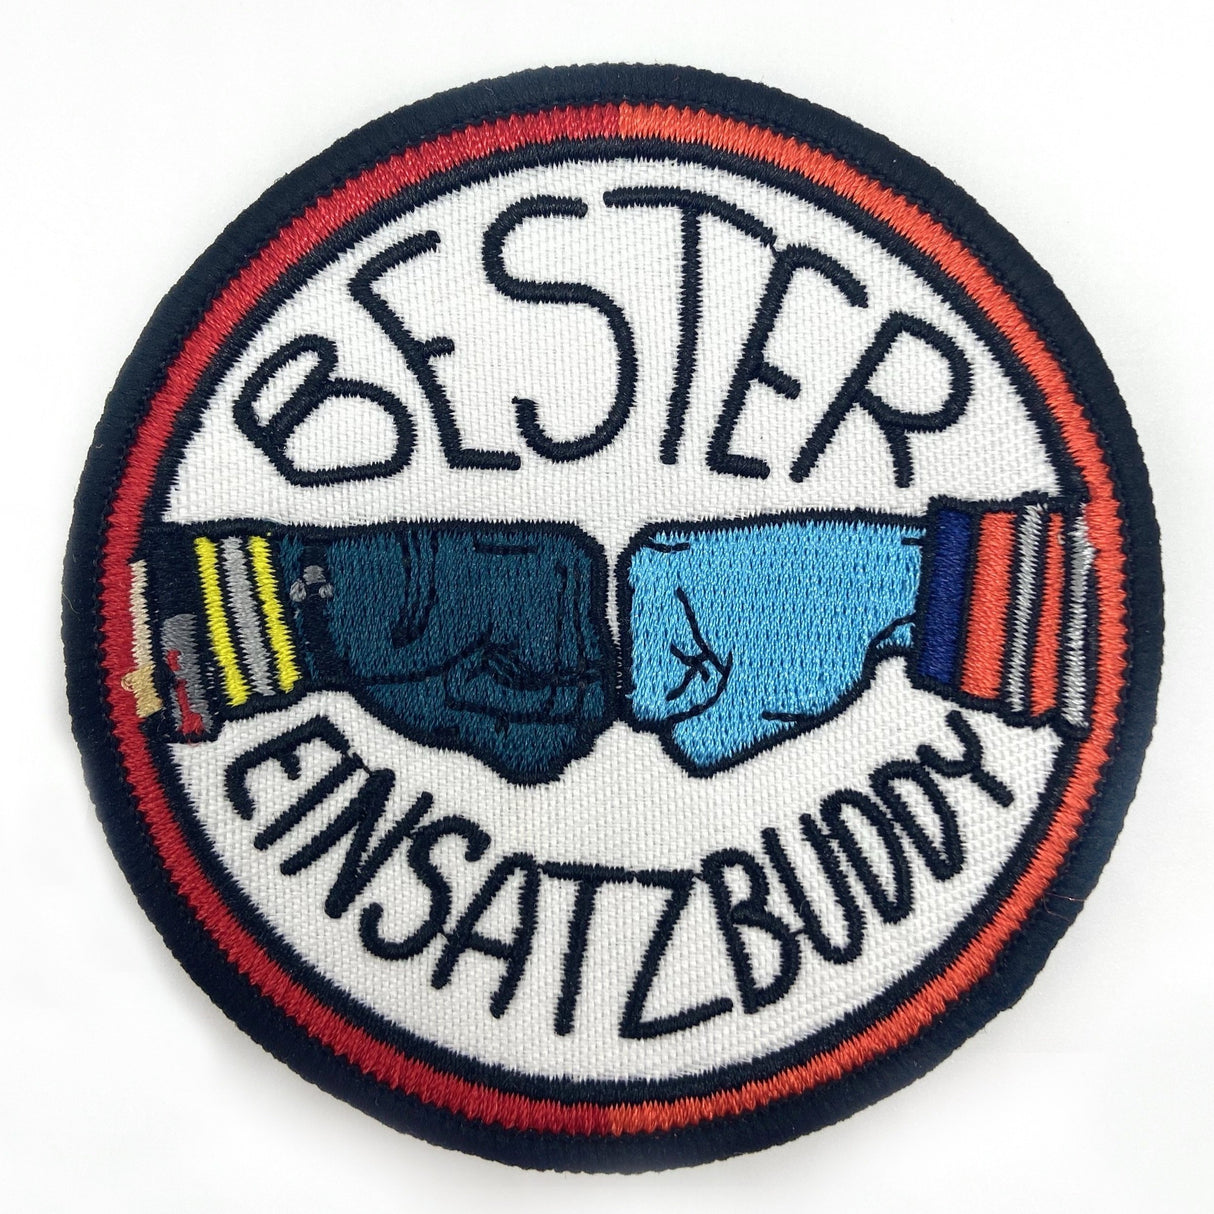 Feuerwehr/Rettung Bester Einsatzbuddy Textil Patch